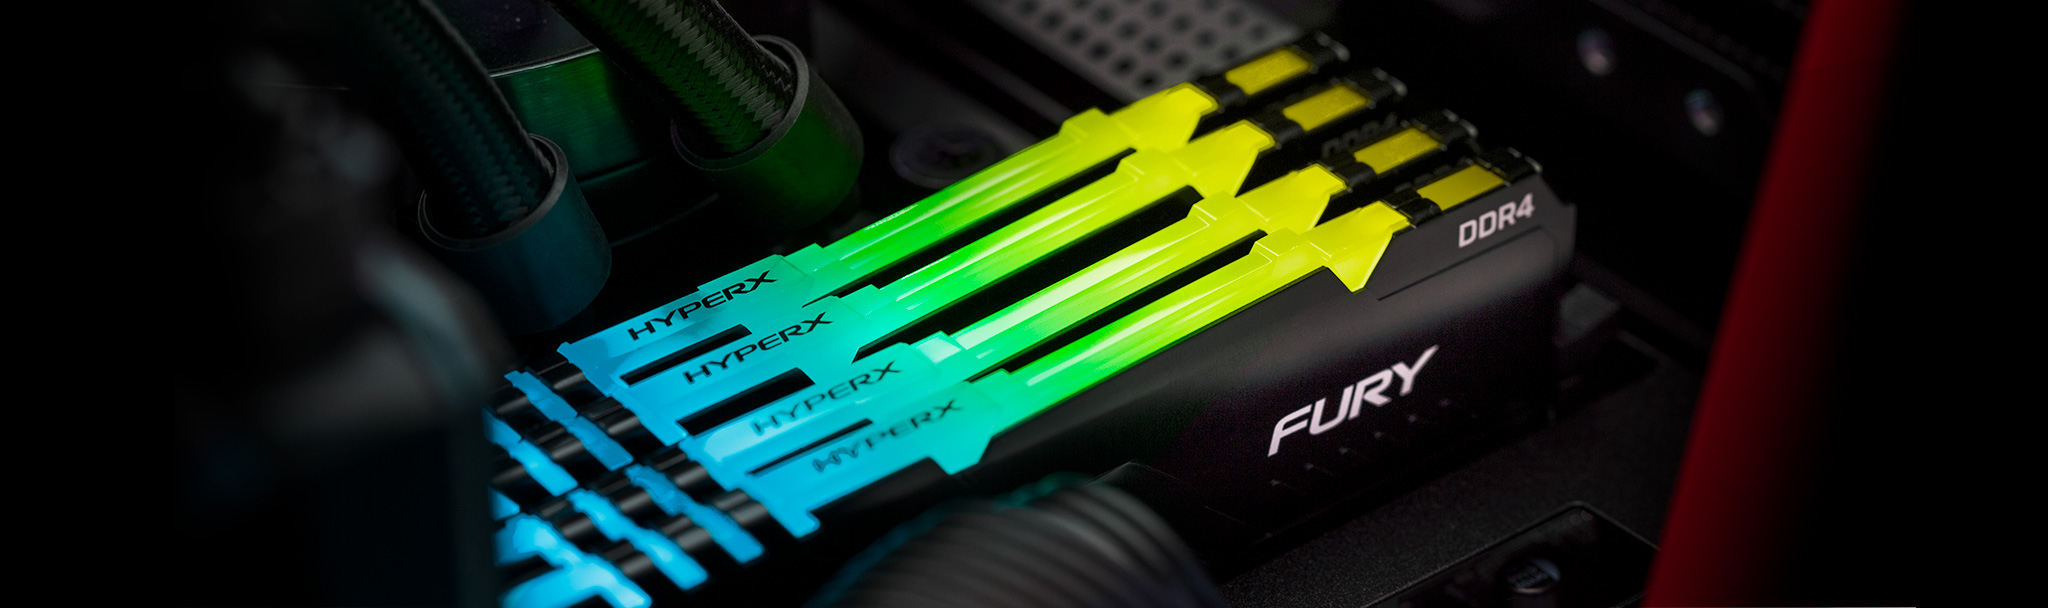 HyperX Fury DDR4 RGB - Kingston Technology